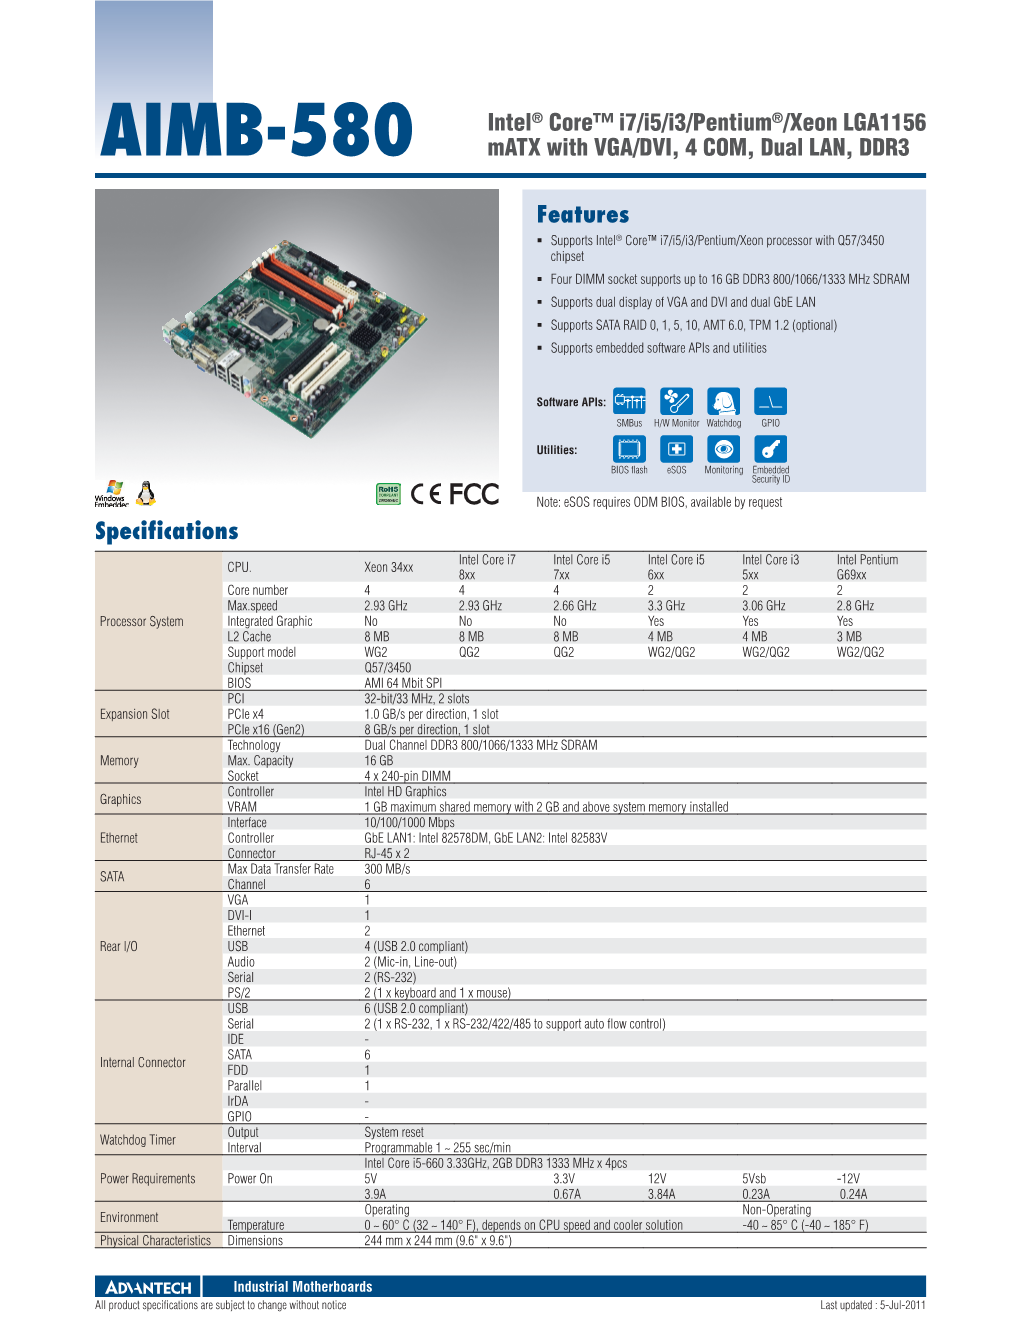 Features AIMB-580 Intel® Core™ I7/I5/I3/Pentium®/Xeon LGA1156